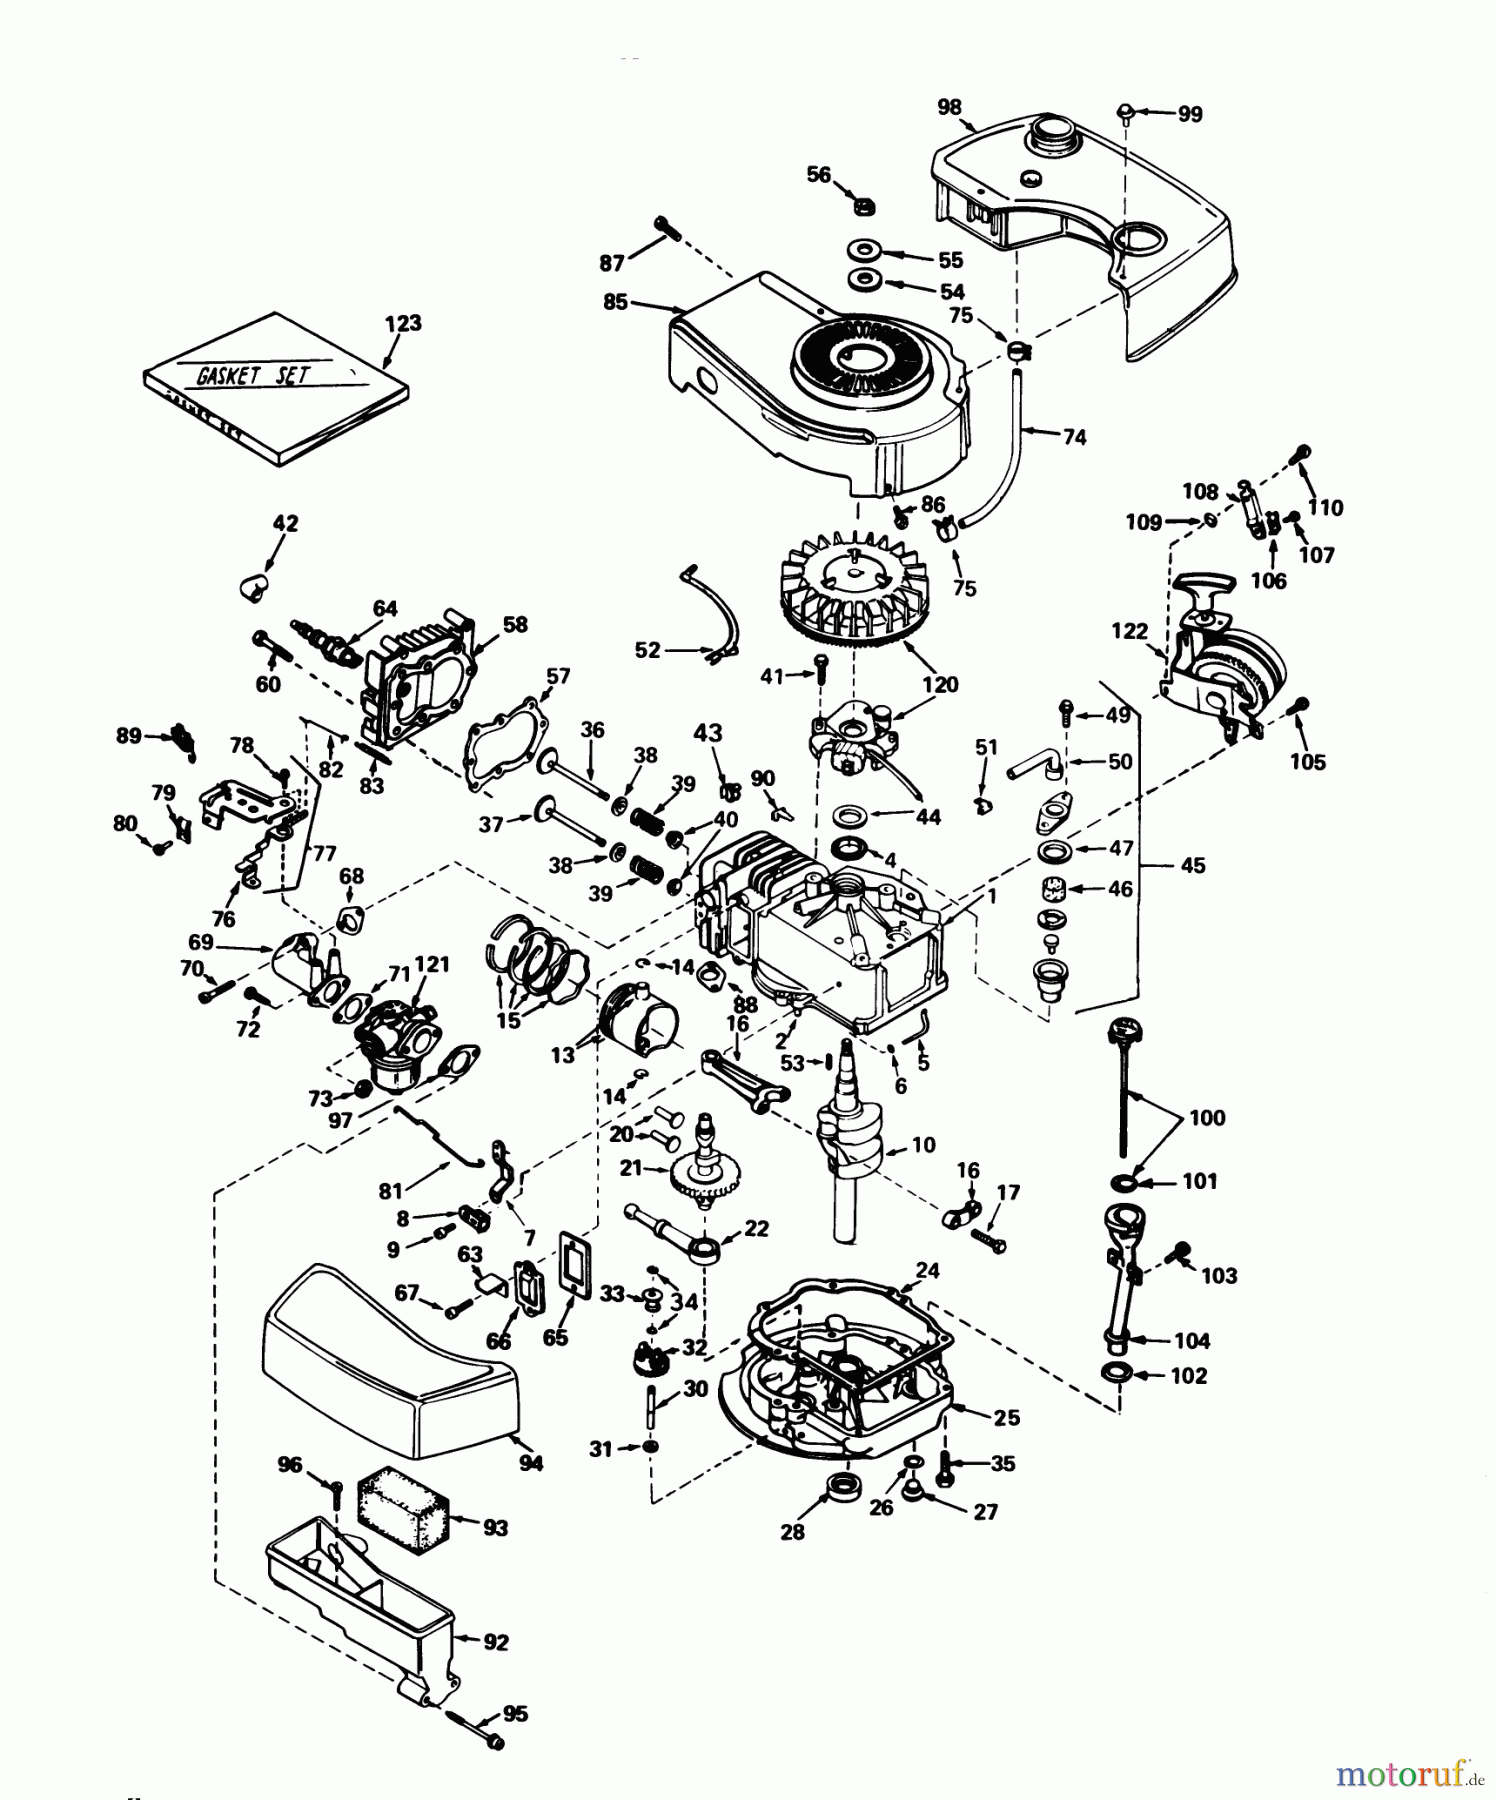  Toro Neu Mowers, Walk-Behind Seite 1 20752 - Toro Lawnmower, 1978 (8000001-8999999) ENGINE TECUMSEH MODEL NO. TNT 100-10059B